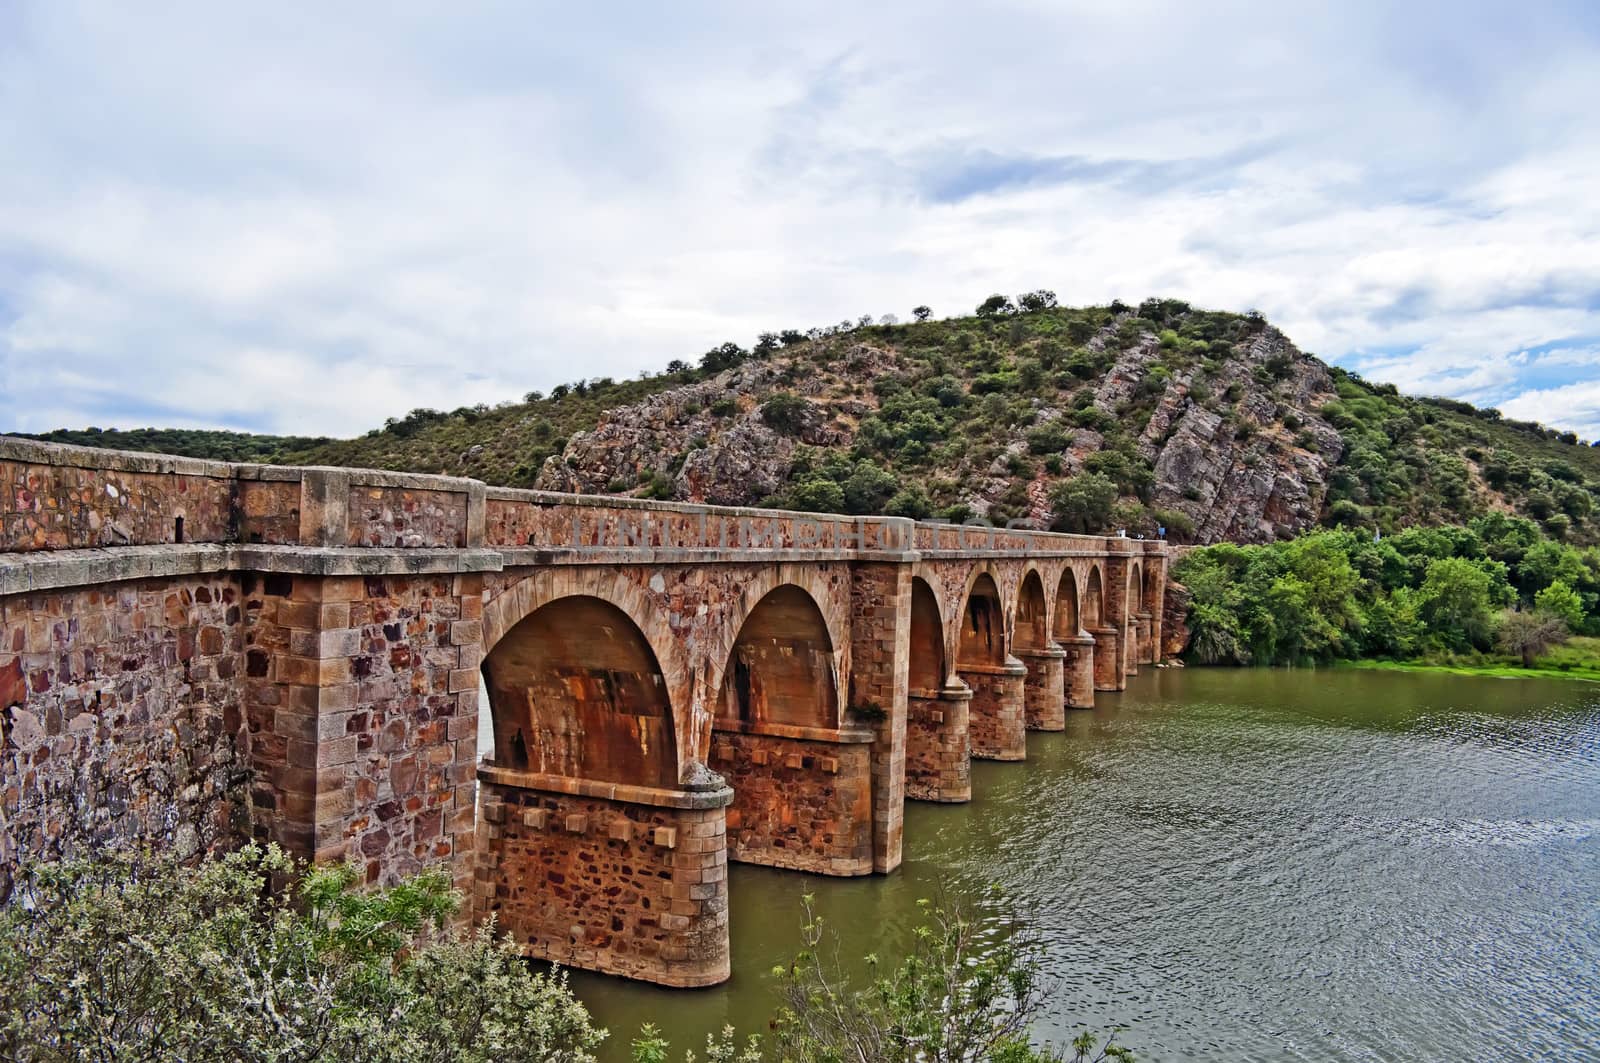 Old bridge over river in Zamora Spain